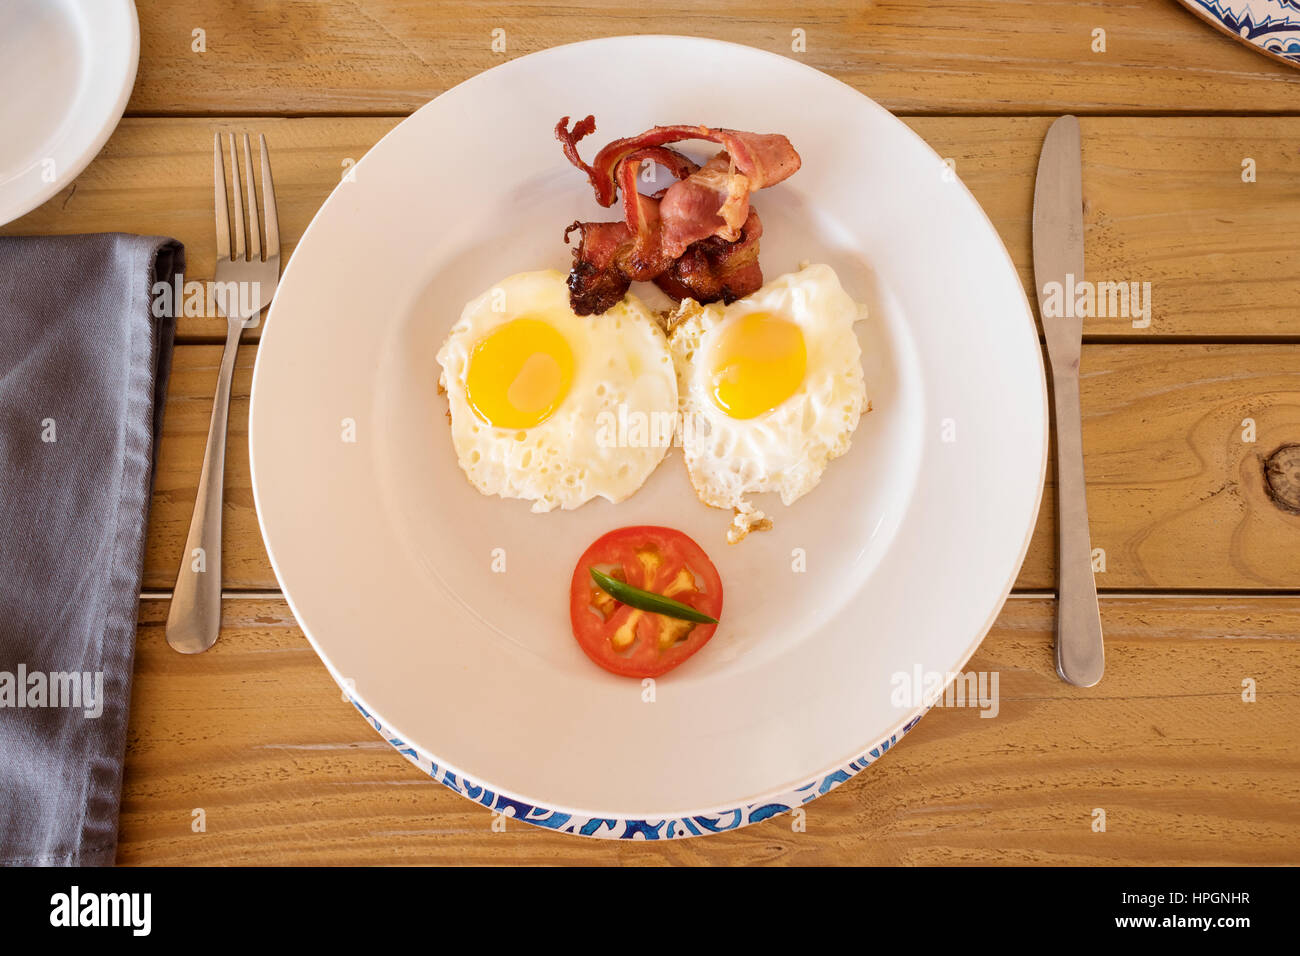 Una piastra di prima colazione servita in un accampamento in Namibia. Sulla piastra sono presenti due uova fritte, Sunny Side, alcuni bacon croccante e la metà di un pomodoro. Foto Stock